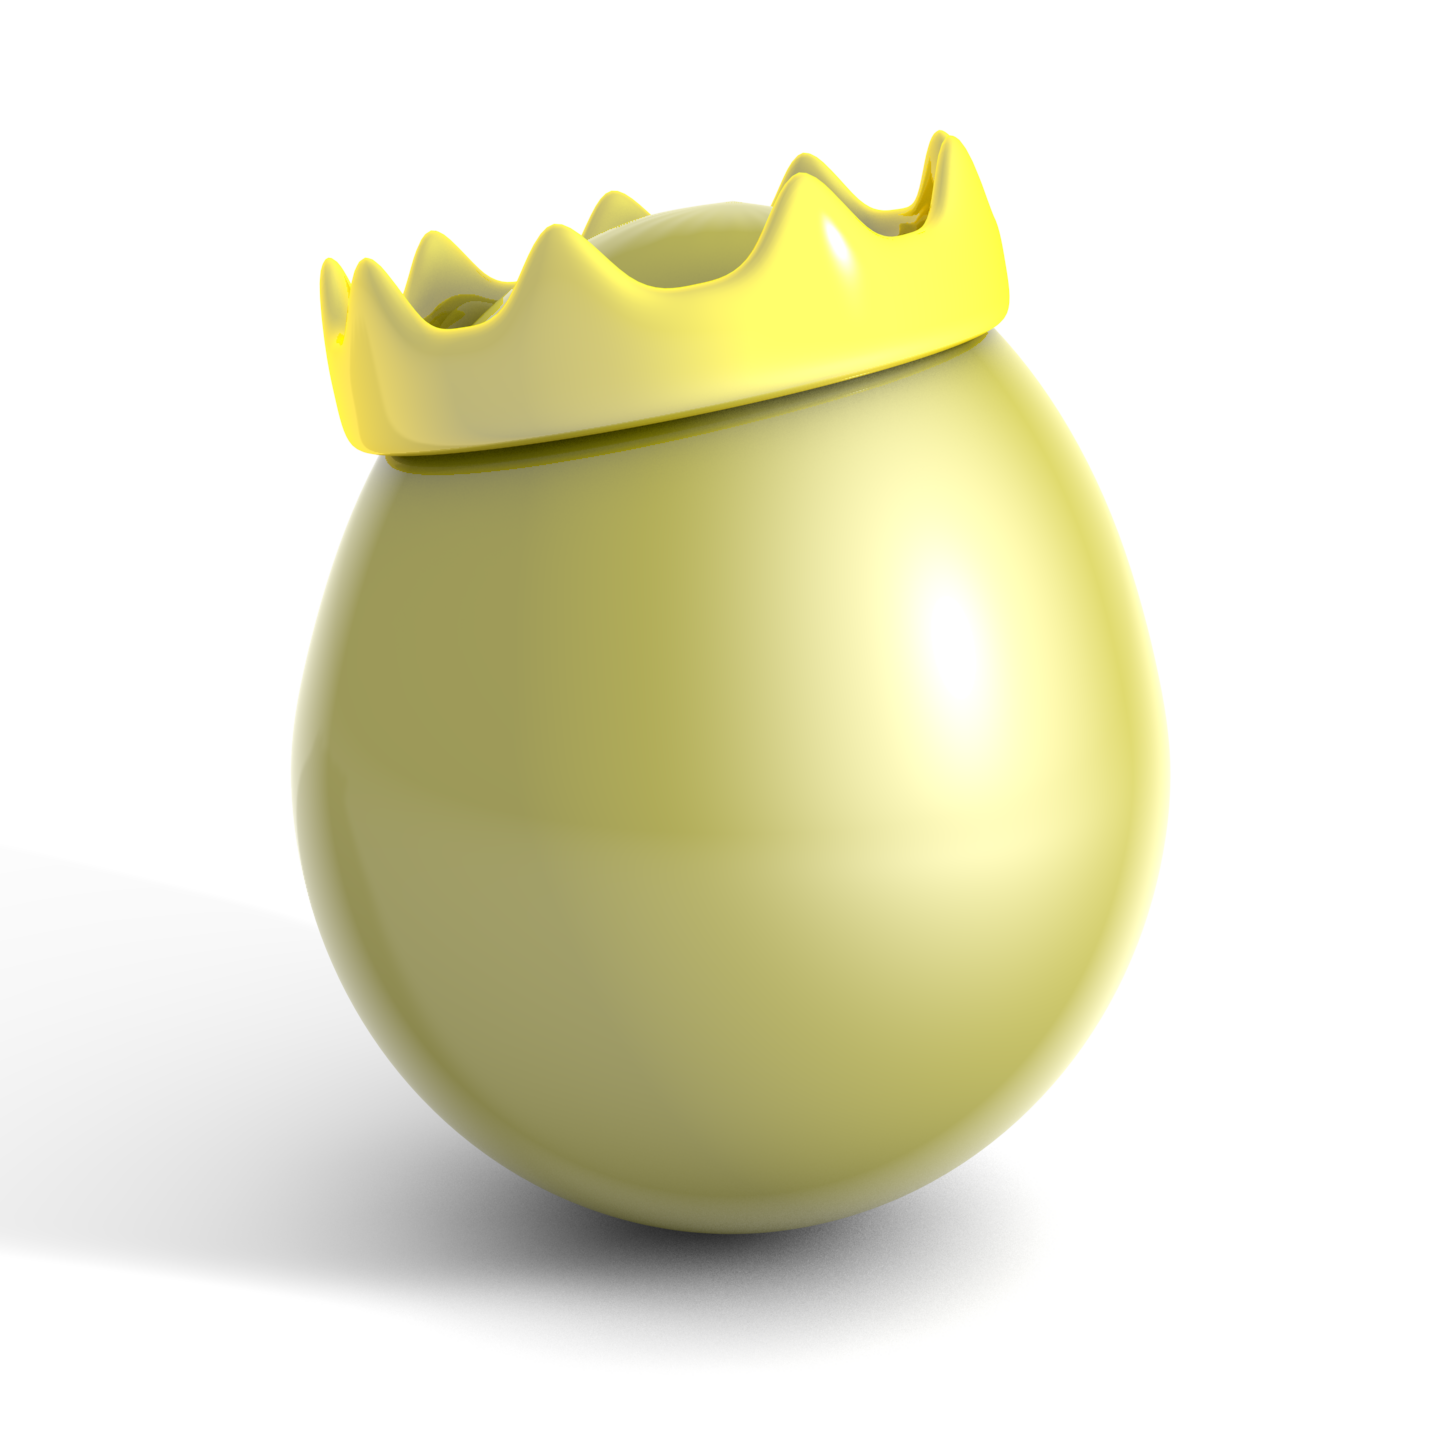 golden egg by be-art-be-smart on DeviantArt